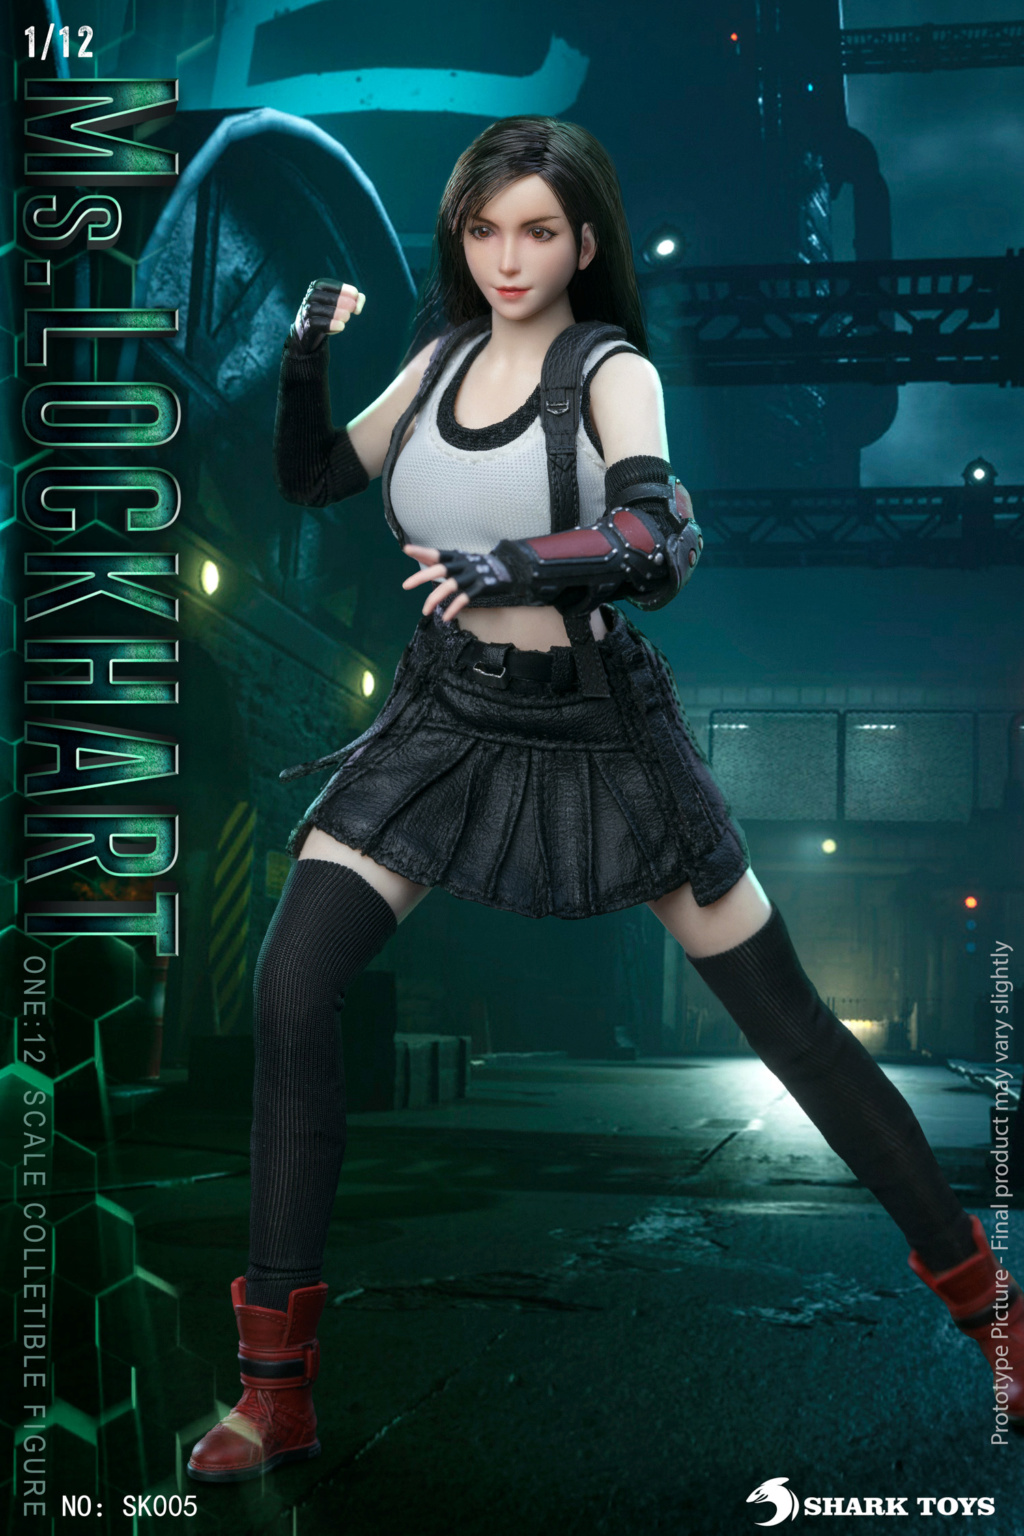 female - NEW PRODUCT: SharkToys: SK005 1/12 Scale Fantasy Female Warrior 1440